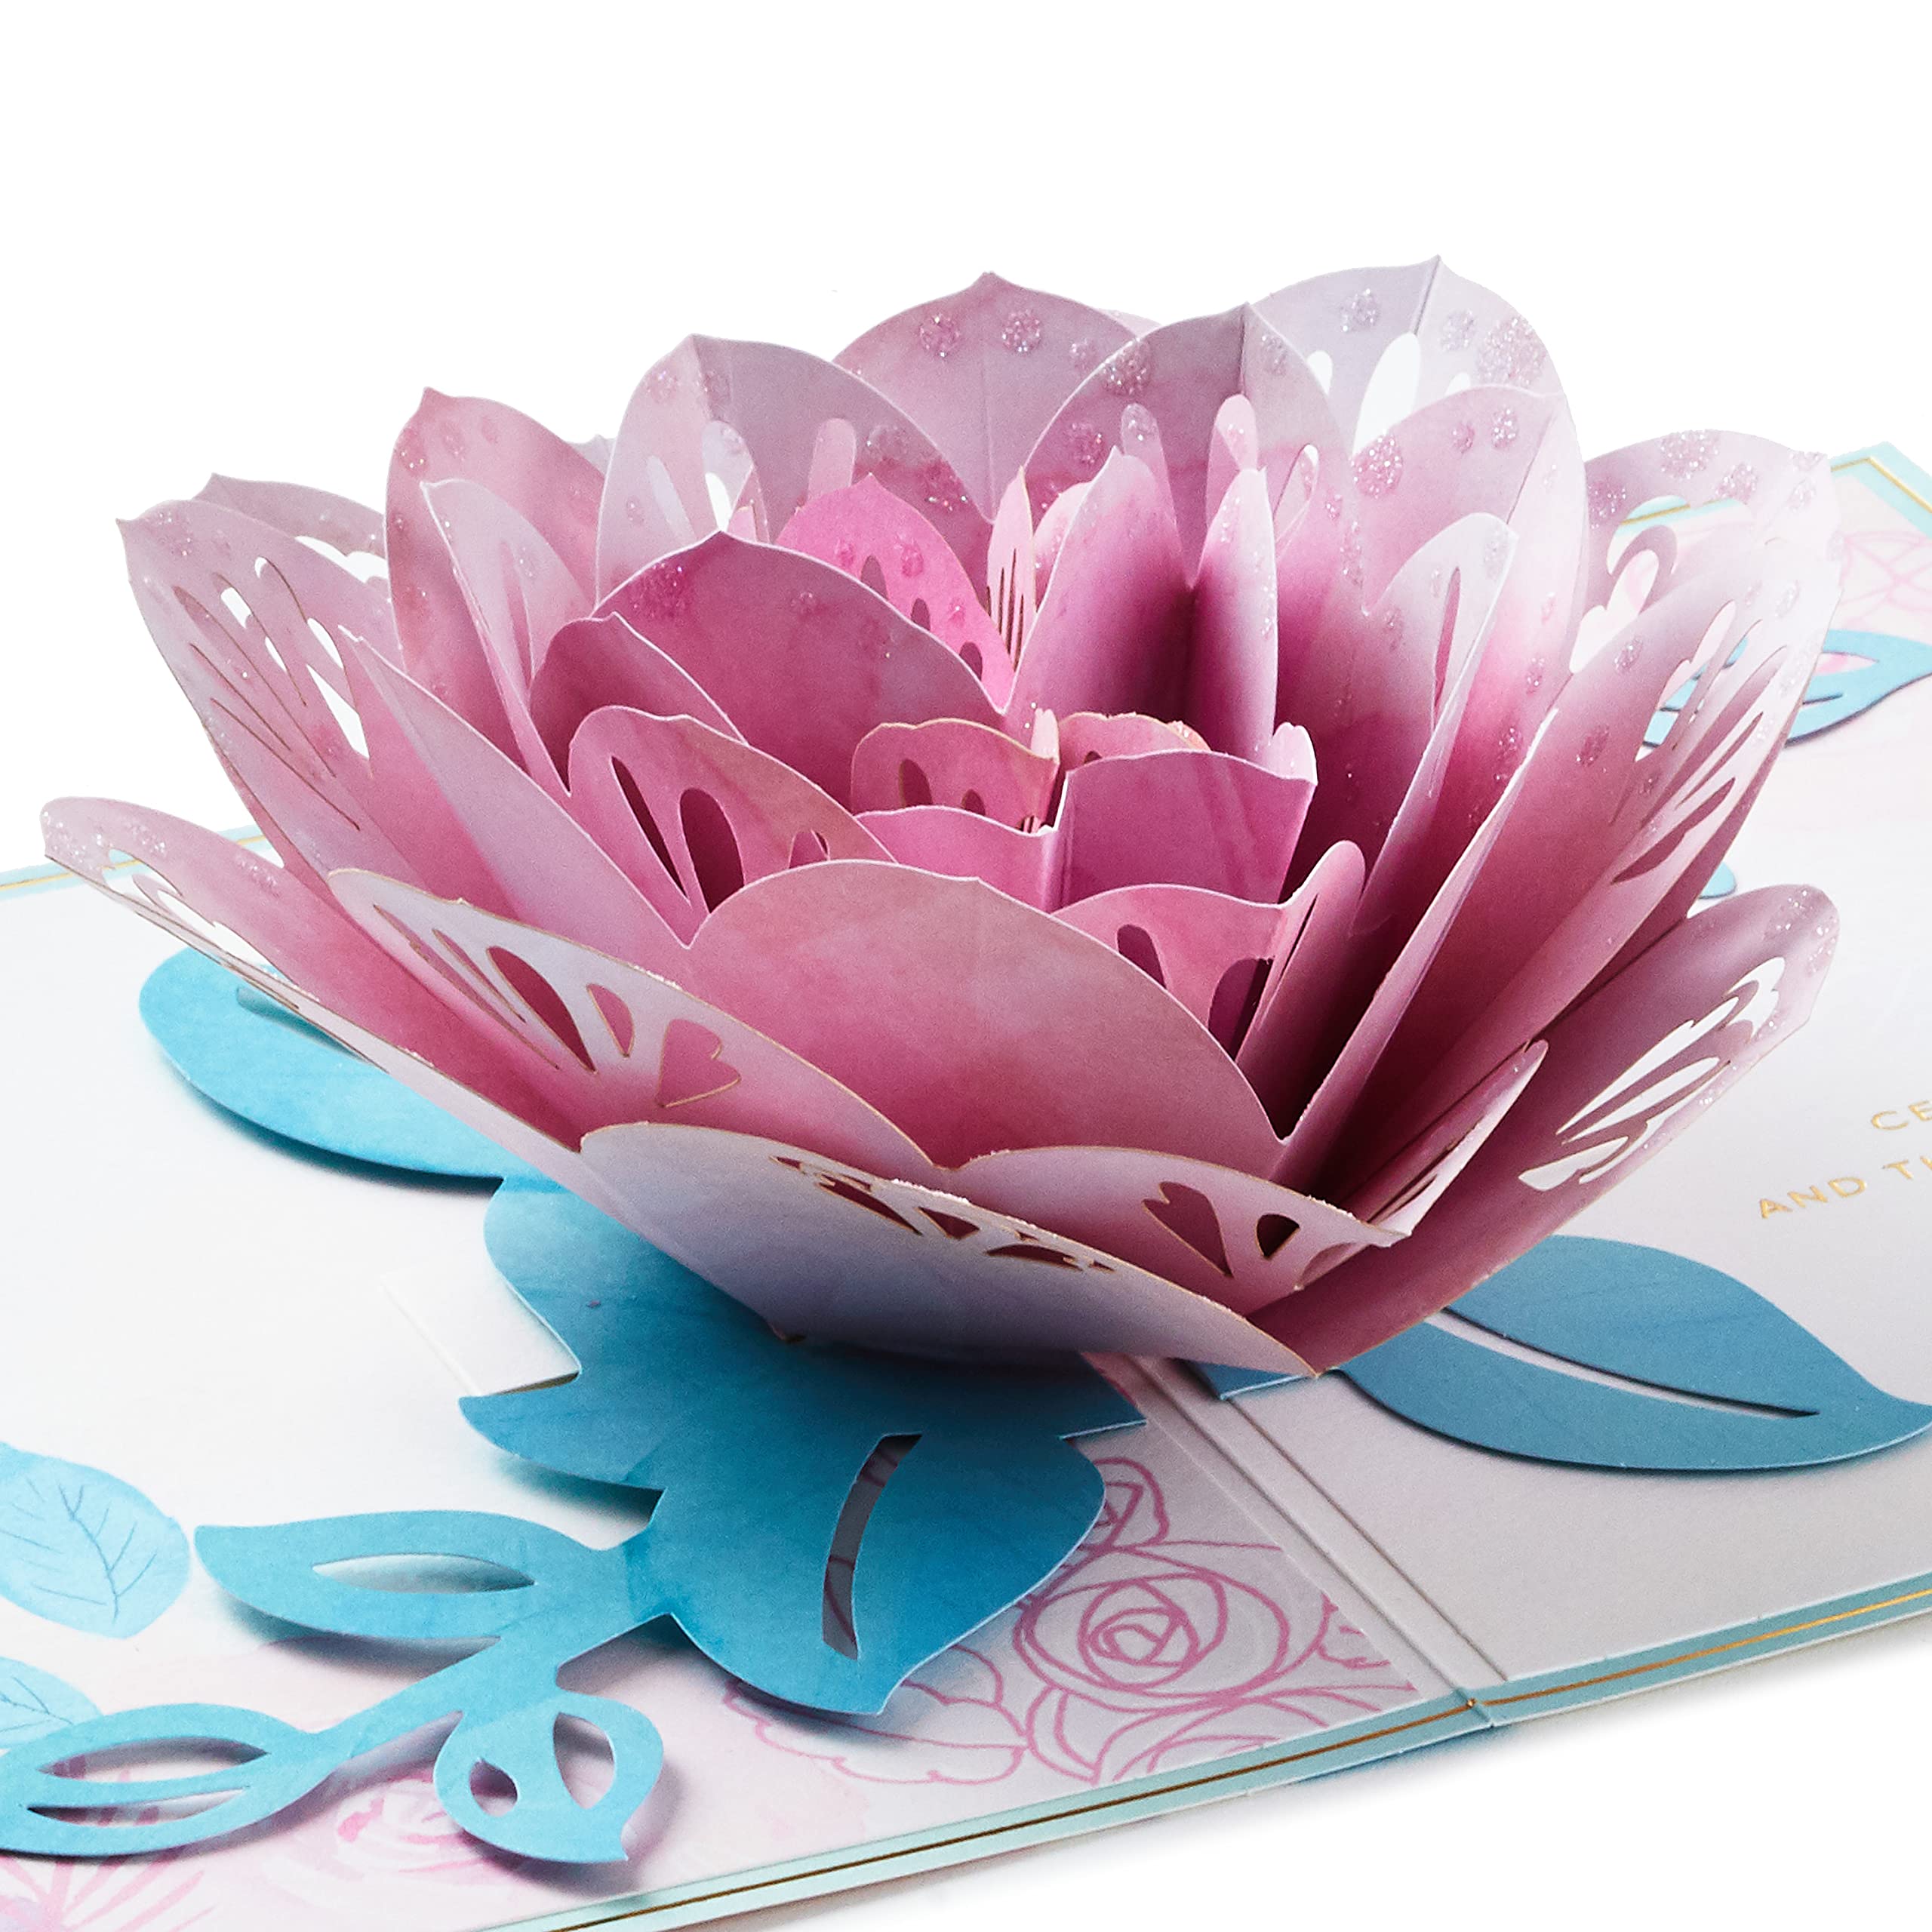 $5.83: Hallmark Signature Paper Wonder Pop Up Birthday Card (Pink Rose)